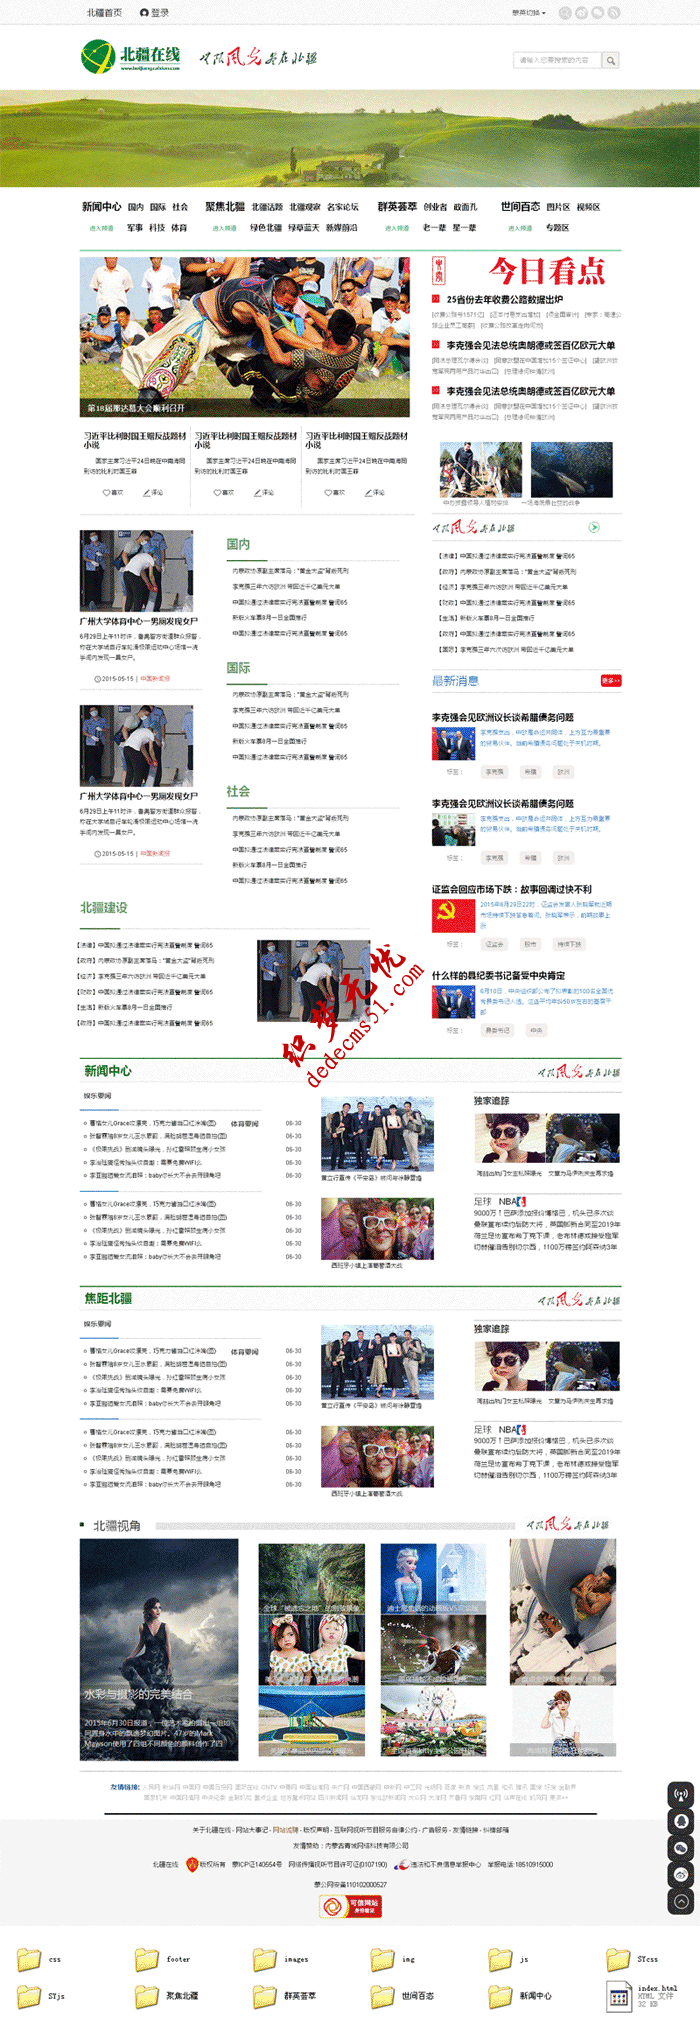 北疆在线新闻资讯地方门户网站模板html整站静态模板下载